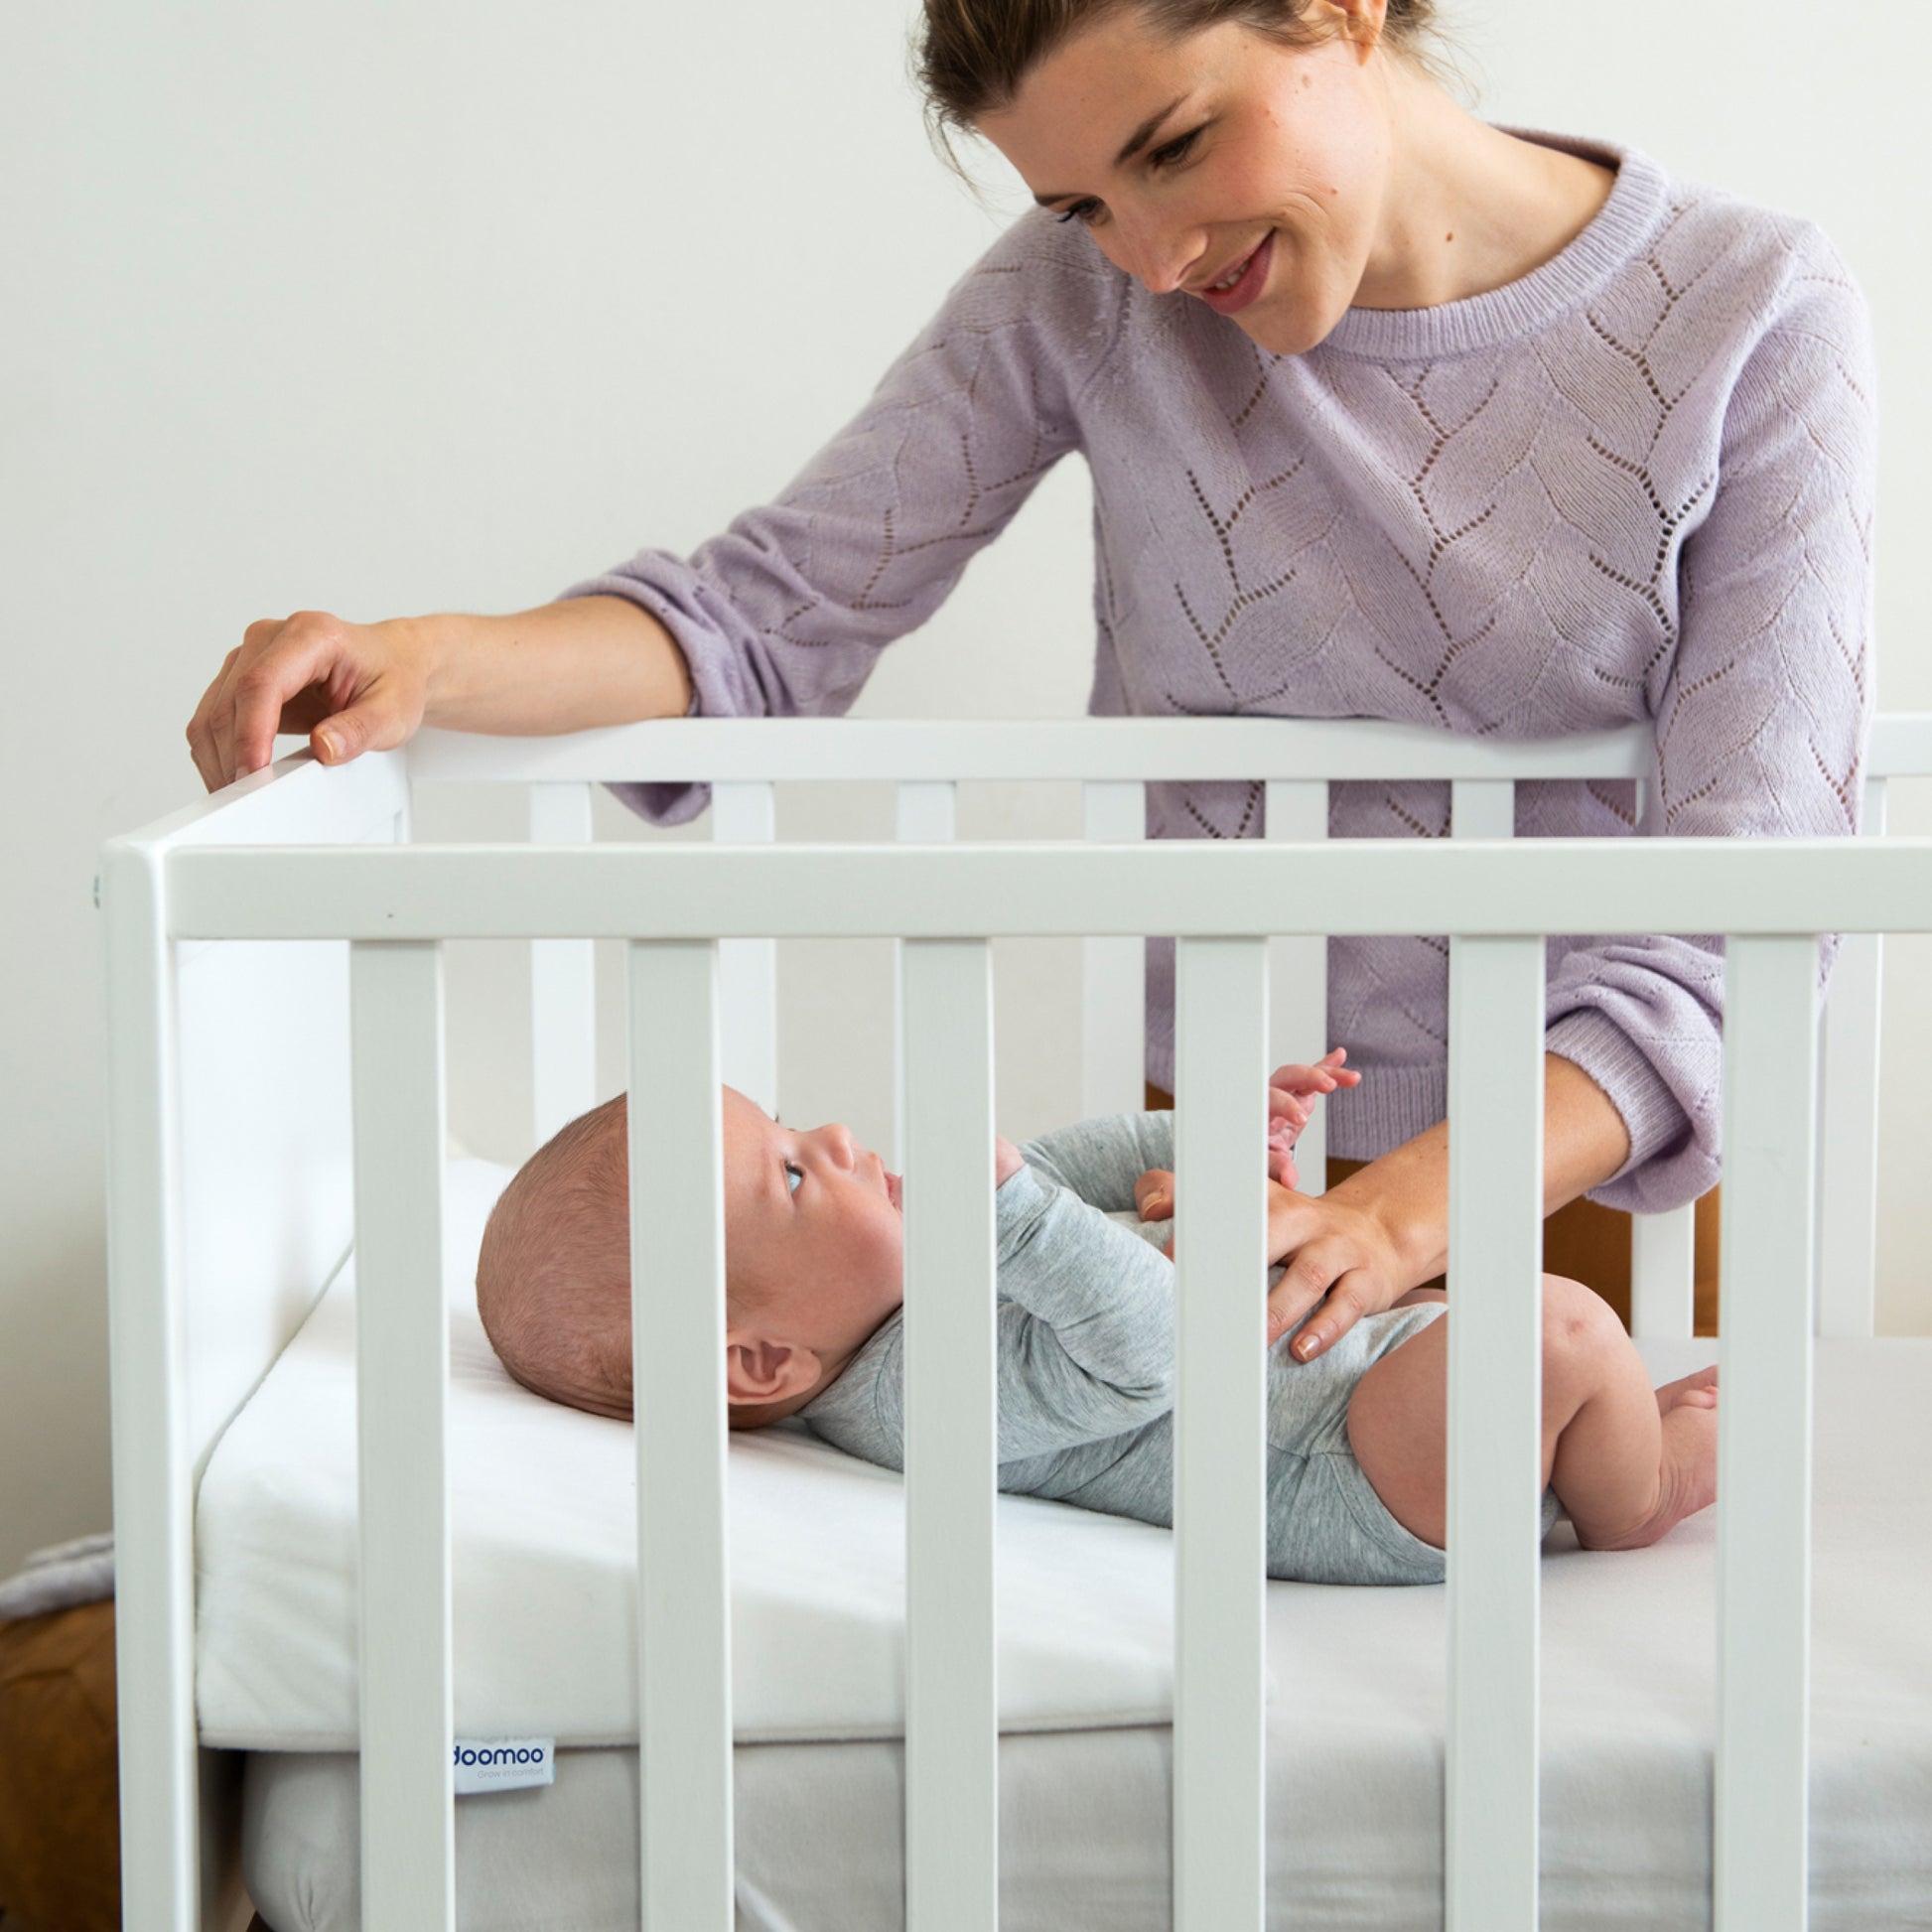 Easy Dort Plan incliné pour bébé 15° - oreiller anti-Reflux Taille